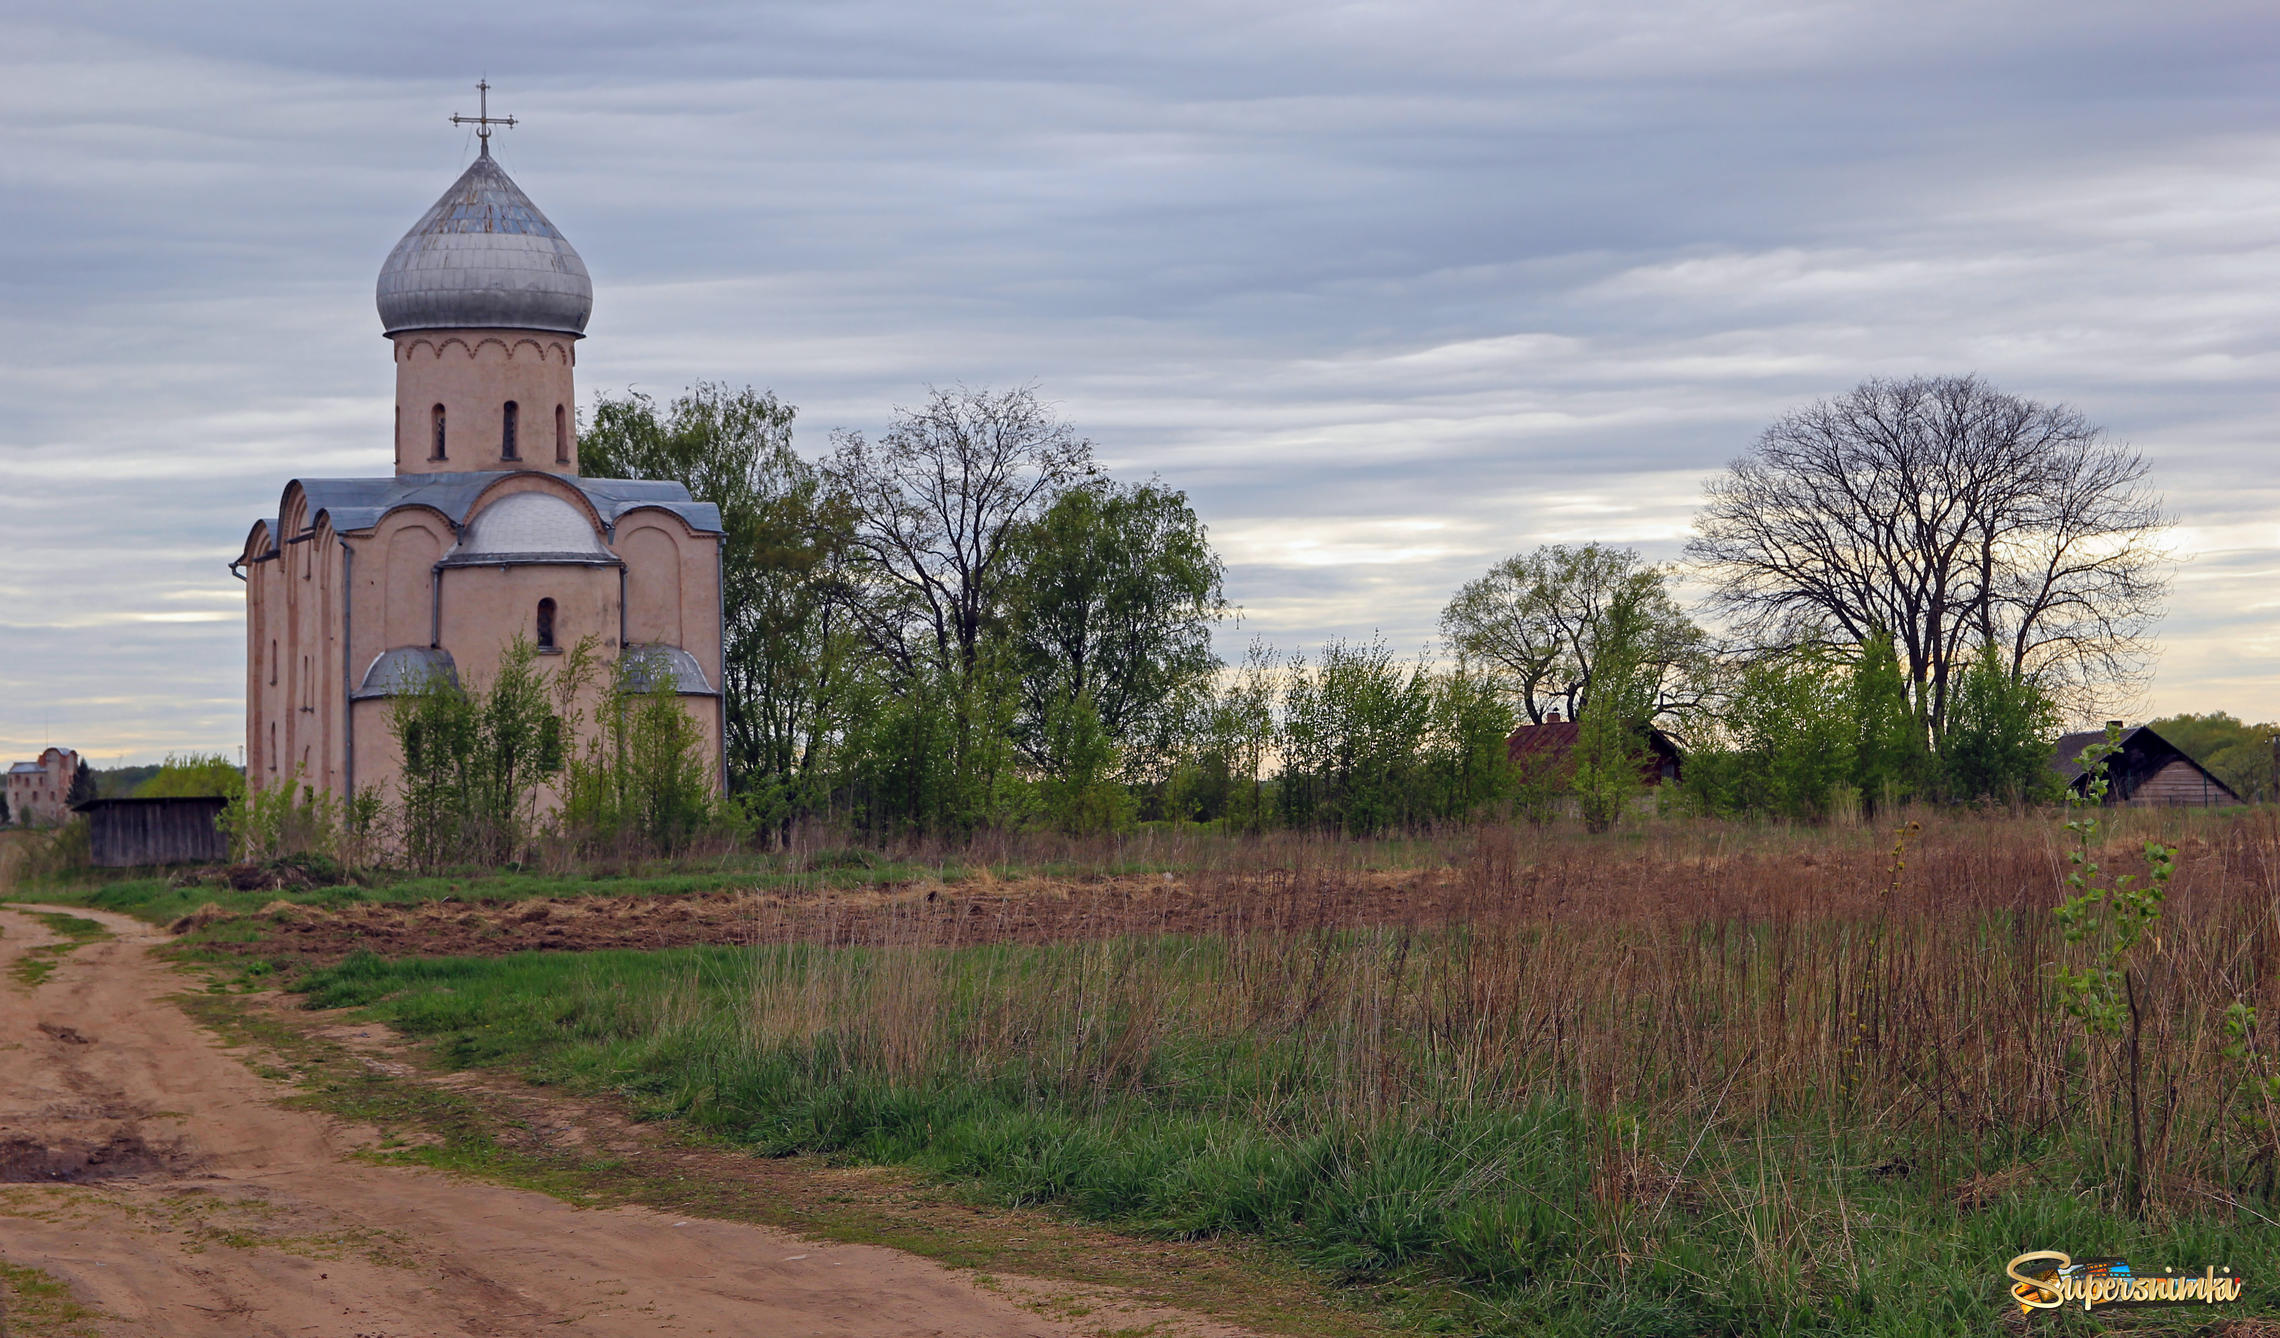 Храмы Новгорода